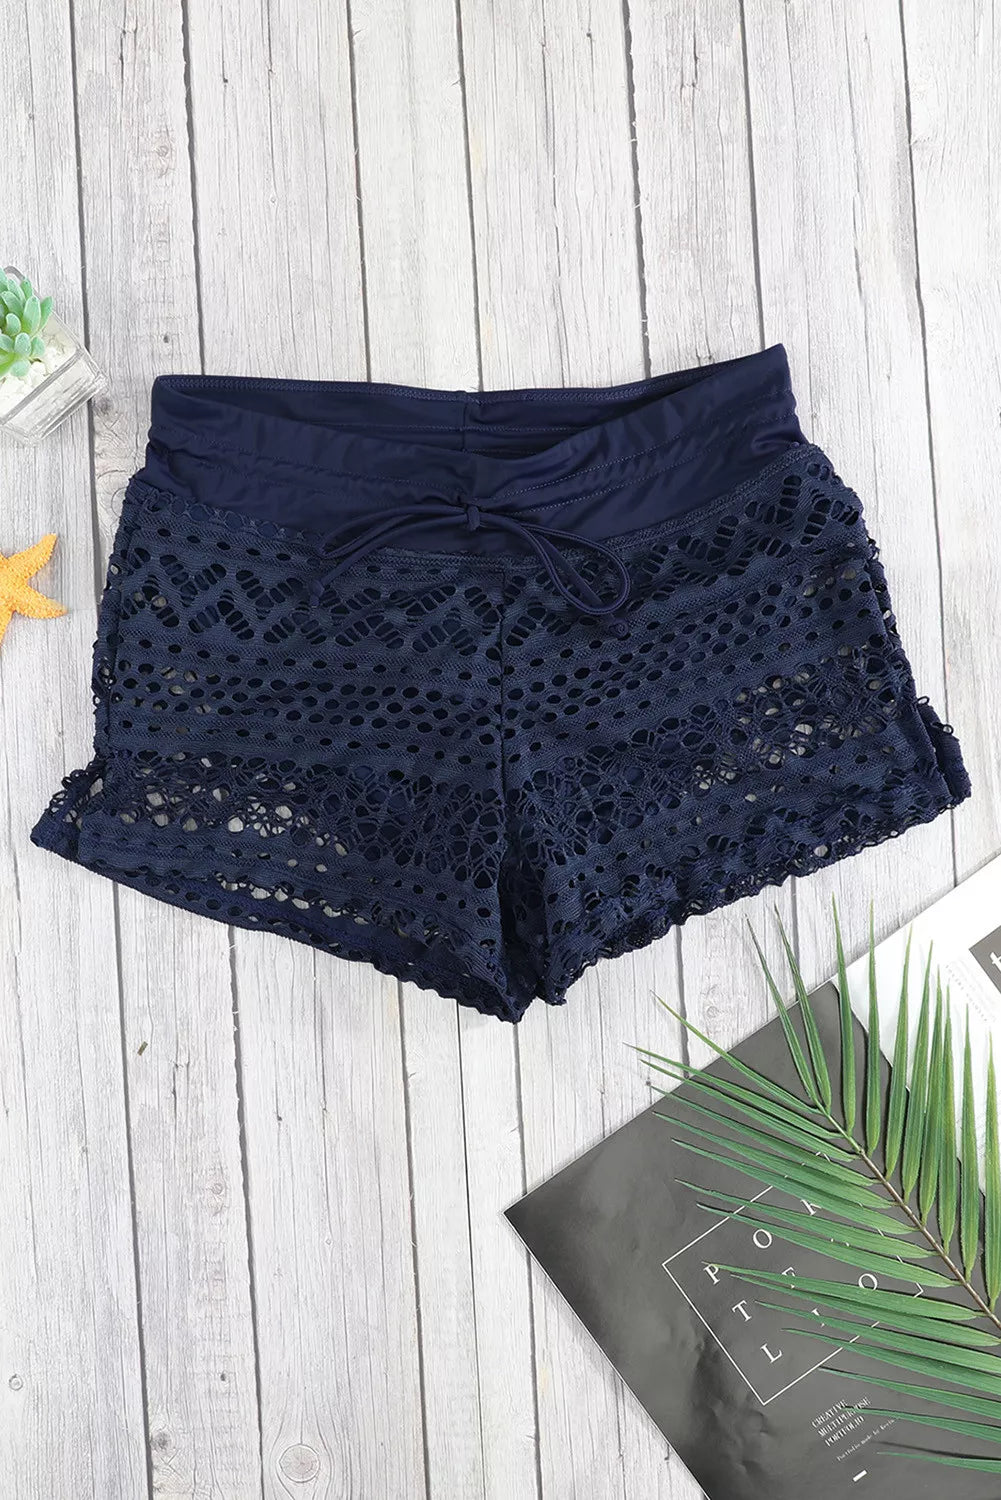 Black Blue Lace Shorts Attached Swim Bottom Lingerie